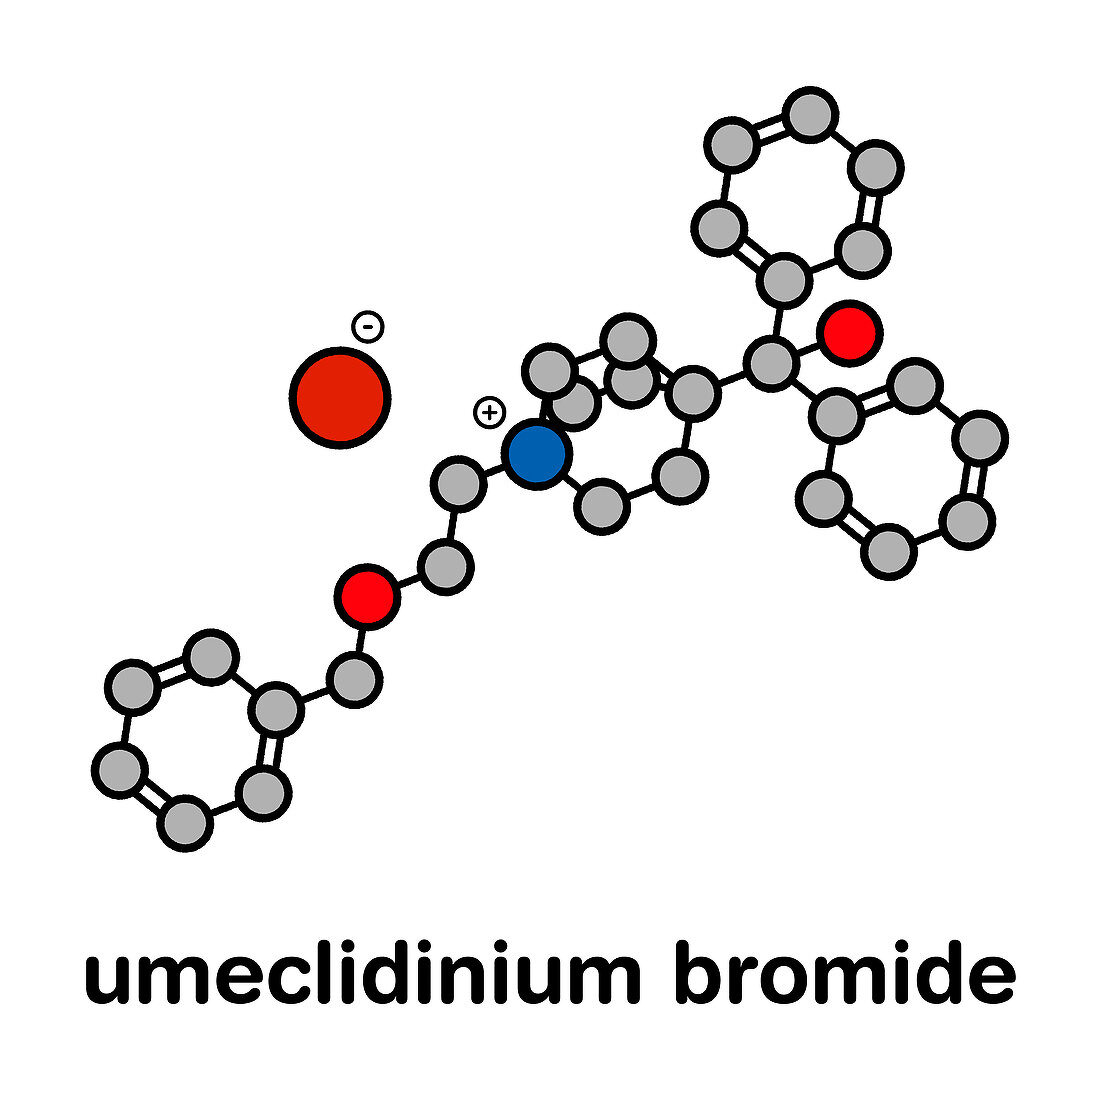 Umeclidinium bromide COPD drug, molecular model